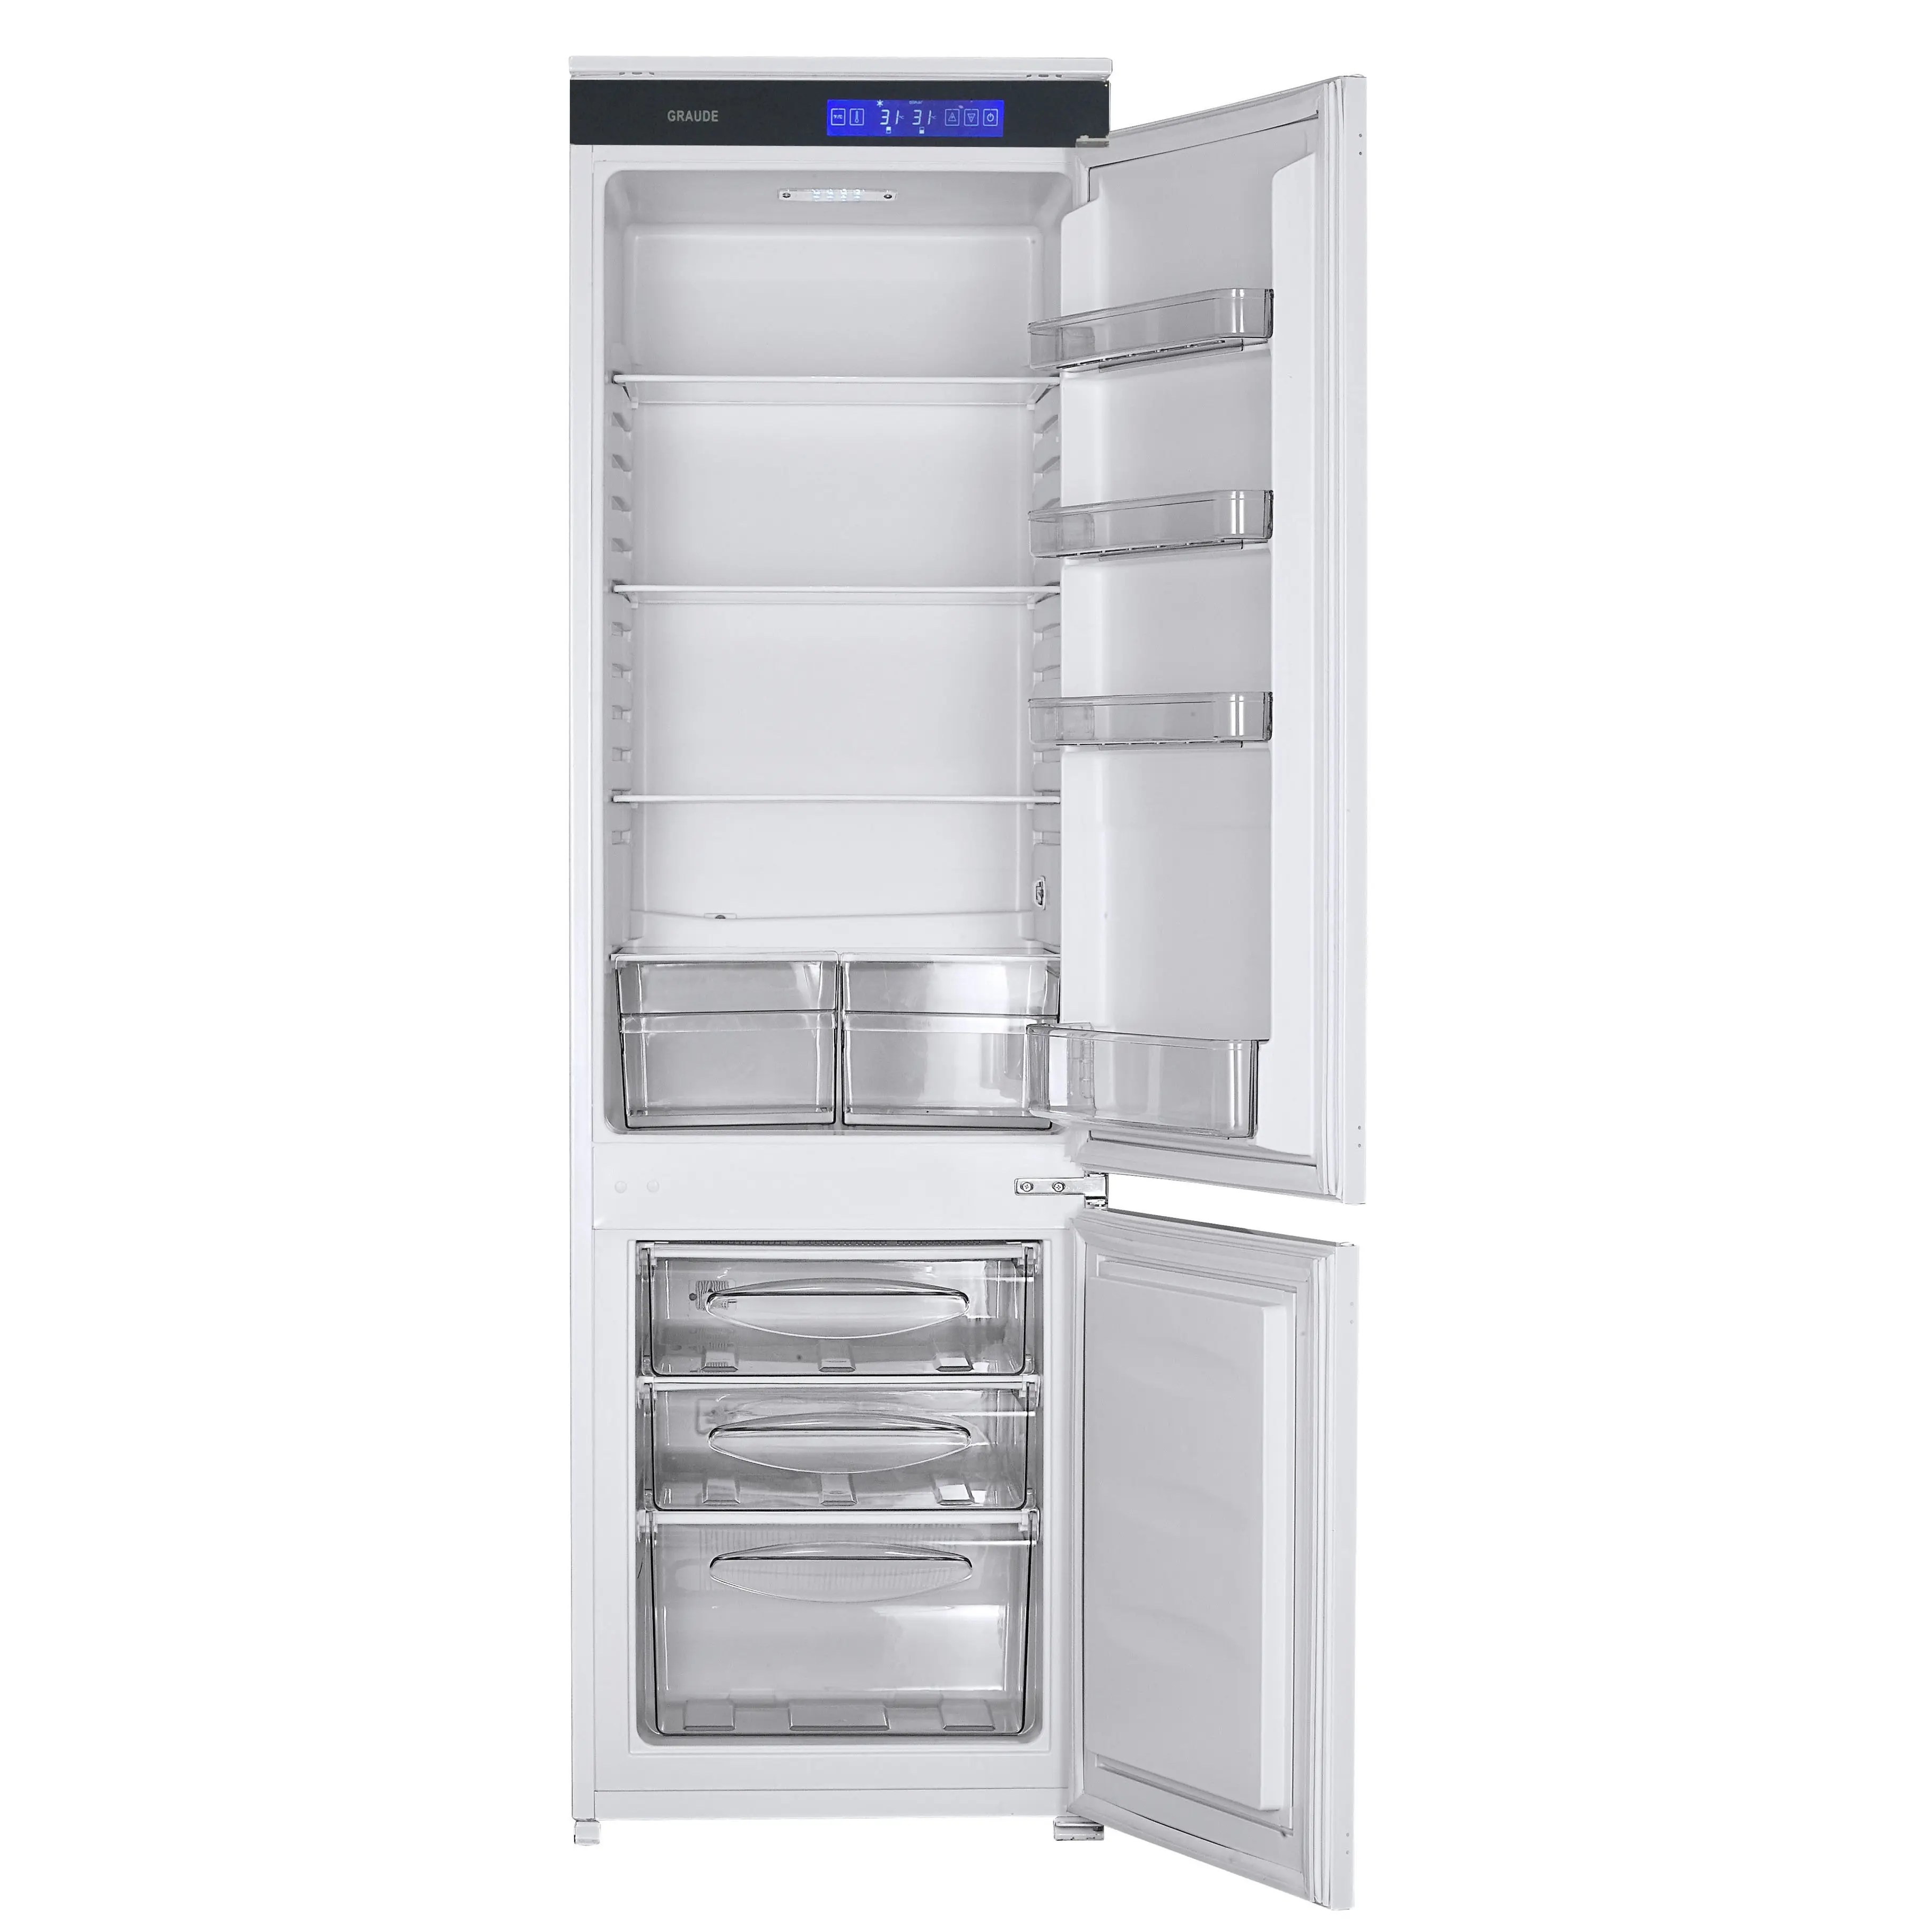 Elettrodomestico costruito in frigo freezer doppia porta frigorifero fondo-congelatore per la decorazione della casa all'ingrosso